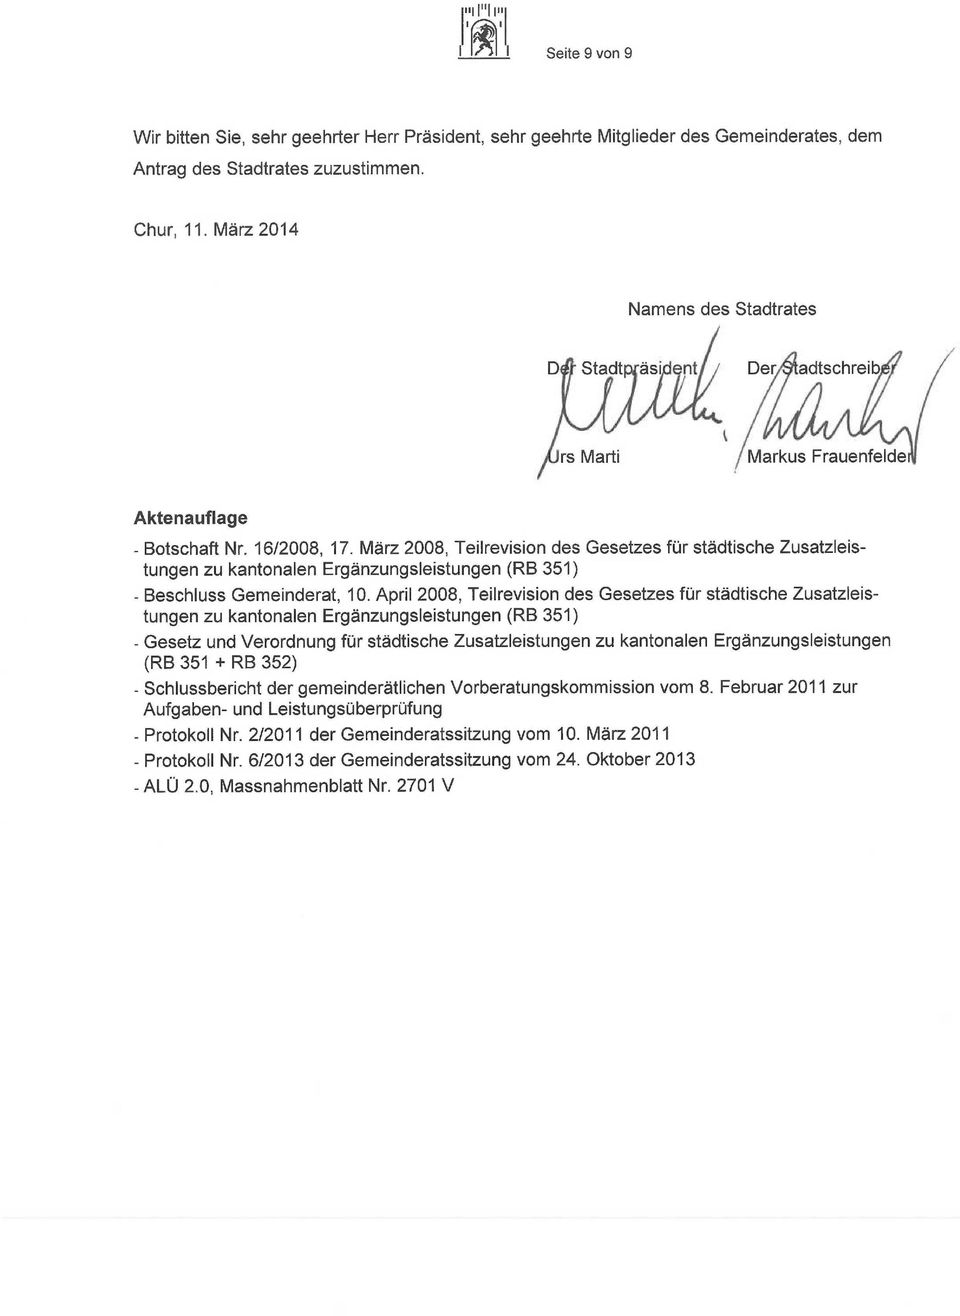 März 2008, Teilrevision des Gesetzes für städtische Zusatzleistungen zu kantonalen Ergänzungsleistungen (RB 351) - Beschluss Gemeinderat, 10.